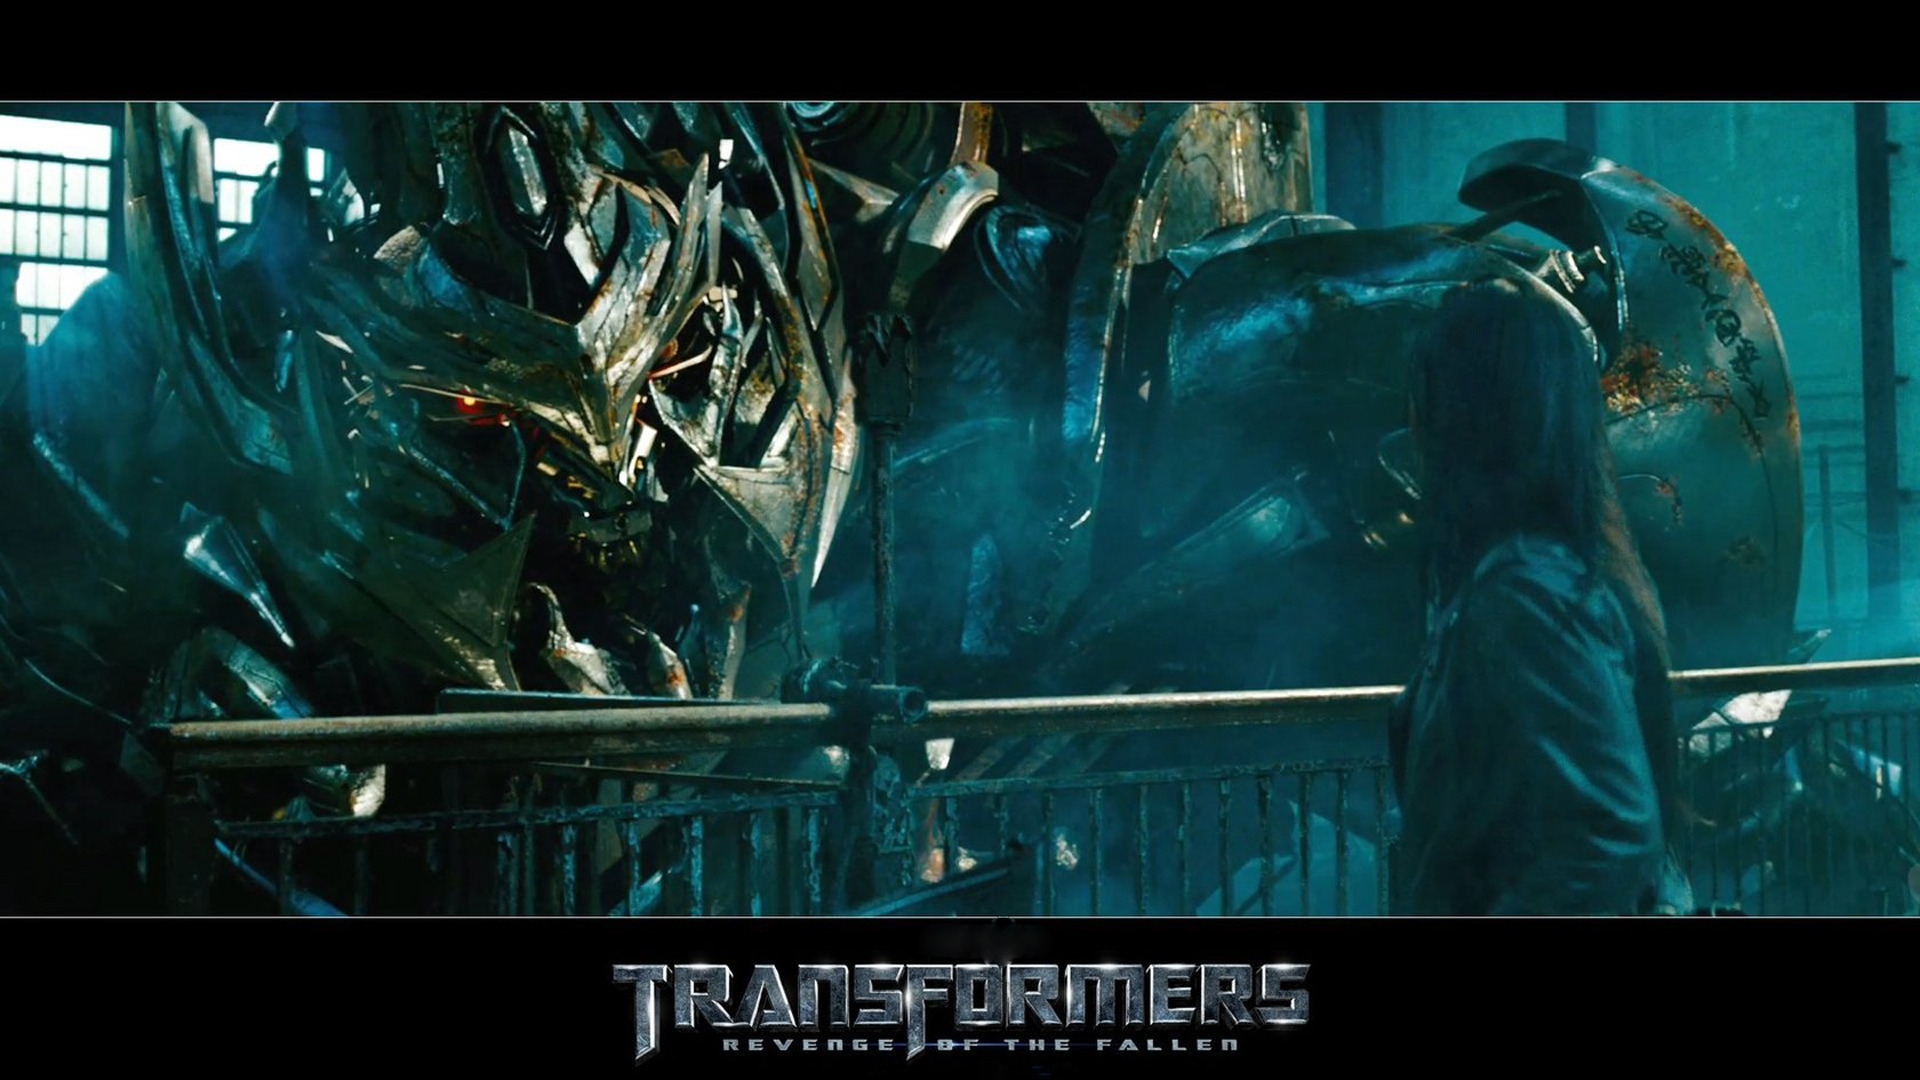 Transformers Revenge of the Fallen for 1920 x 1080 HDTV 1080p resolution